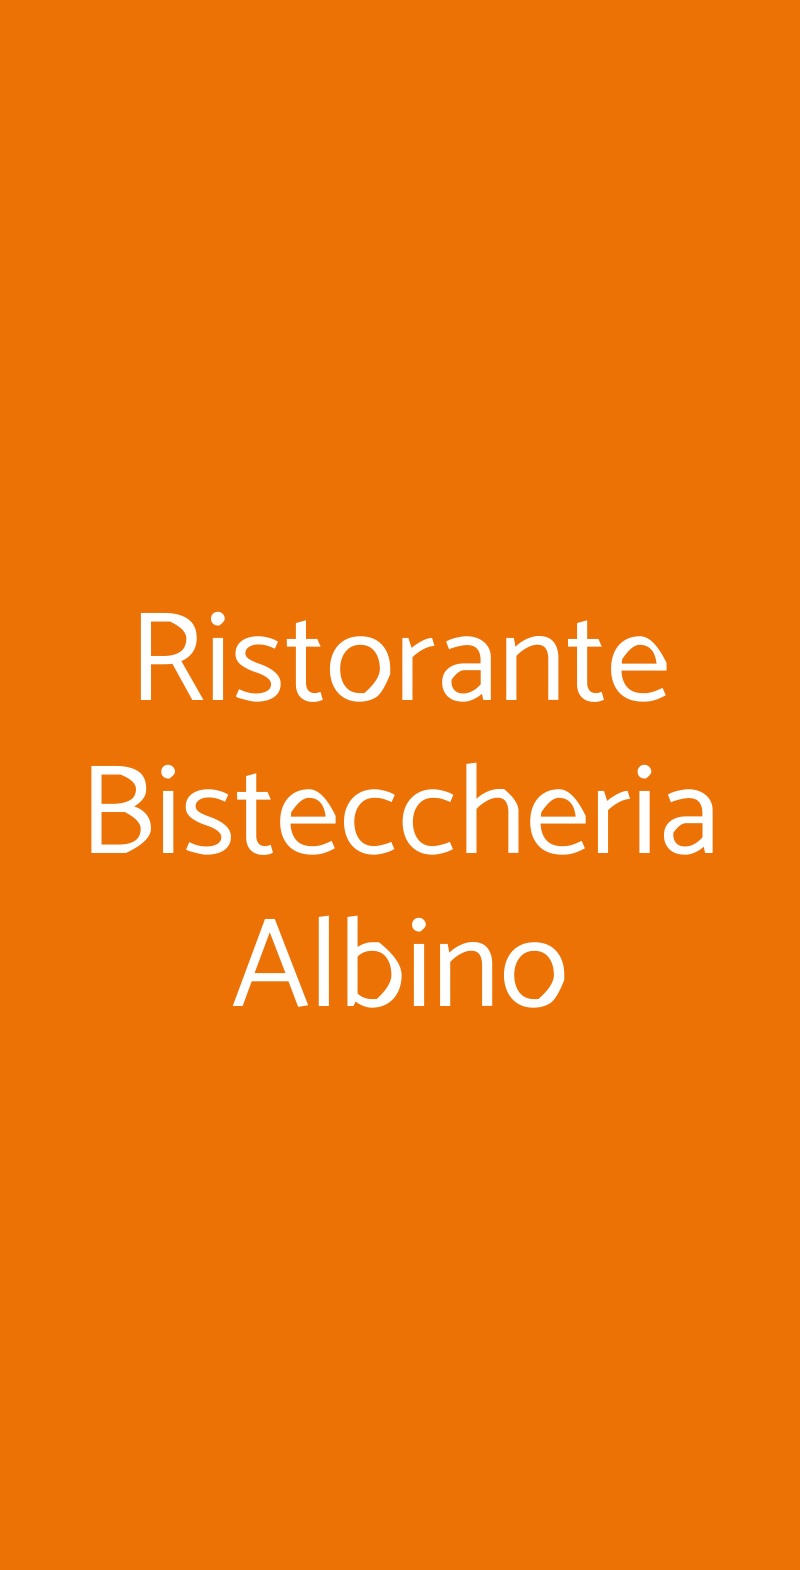 Ristorante Bisteccheria Albino Roma menù 1 pagina